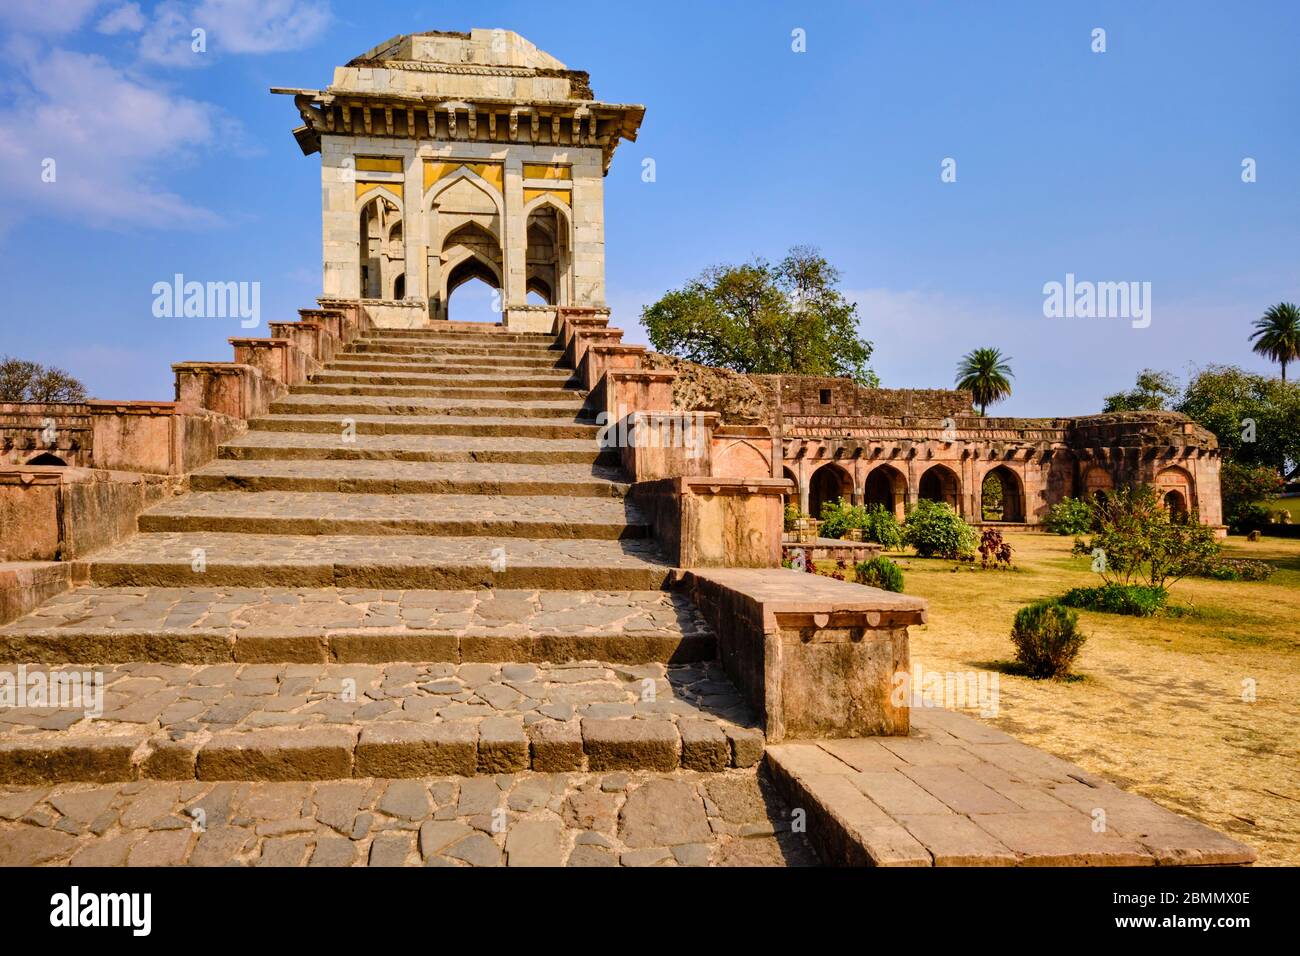 India, Stato di Madhya Pradesh, Mandu, palazzo Ashrafi Mahal, antica madrasa o scuola coranica, architettura in stile afgano Foto Stock